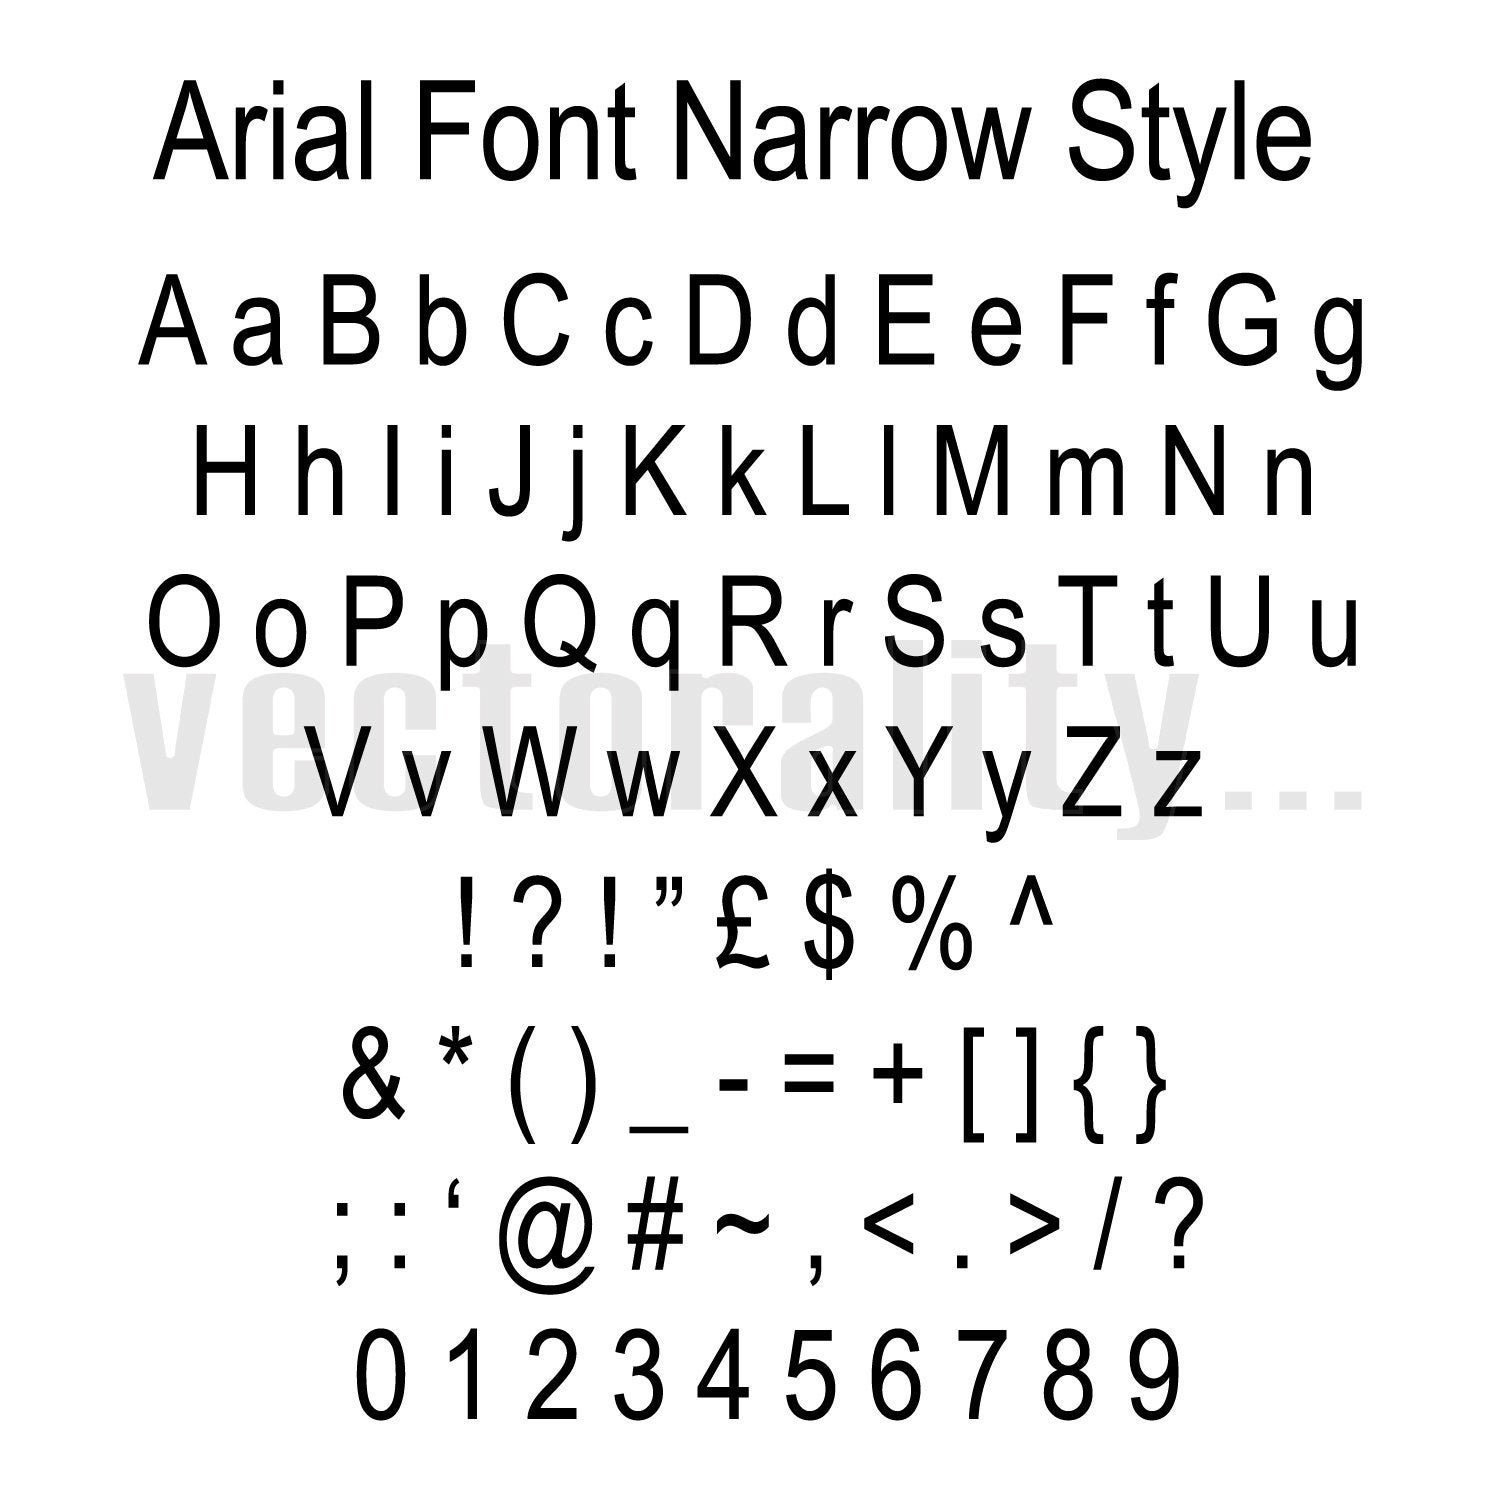 Шрифт arial bold. Шрифт arial narrow. Шрифт Ариал Блэк. Размер шрифта arialnarow. Ариал Нарроу шрифт в линукс.